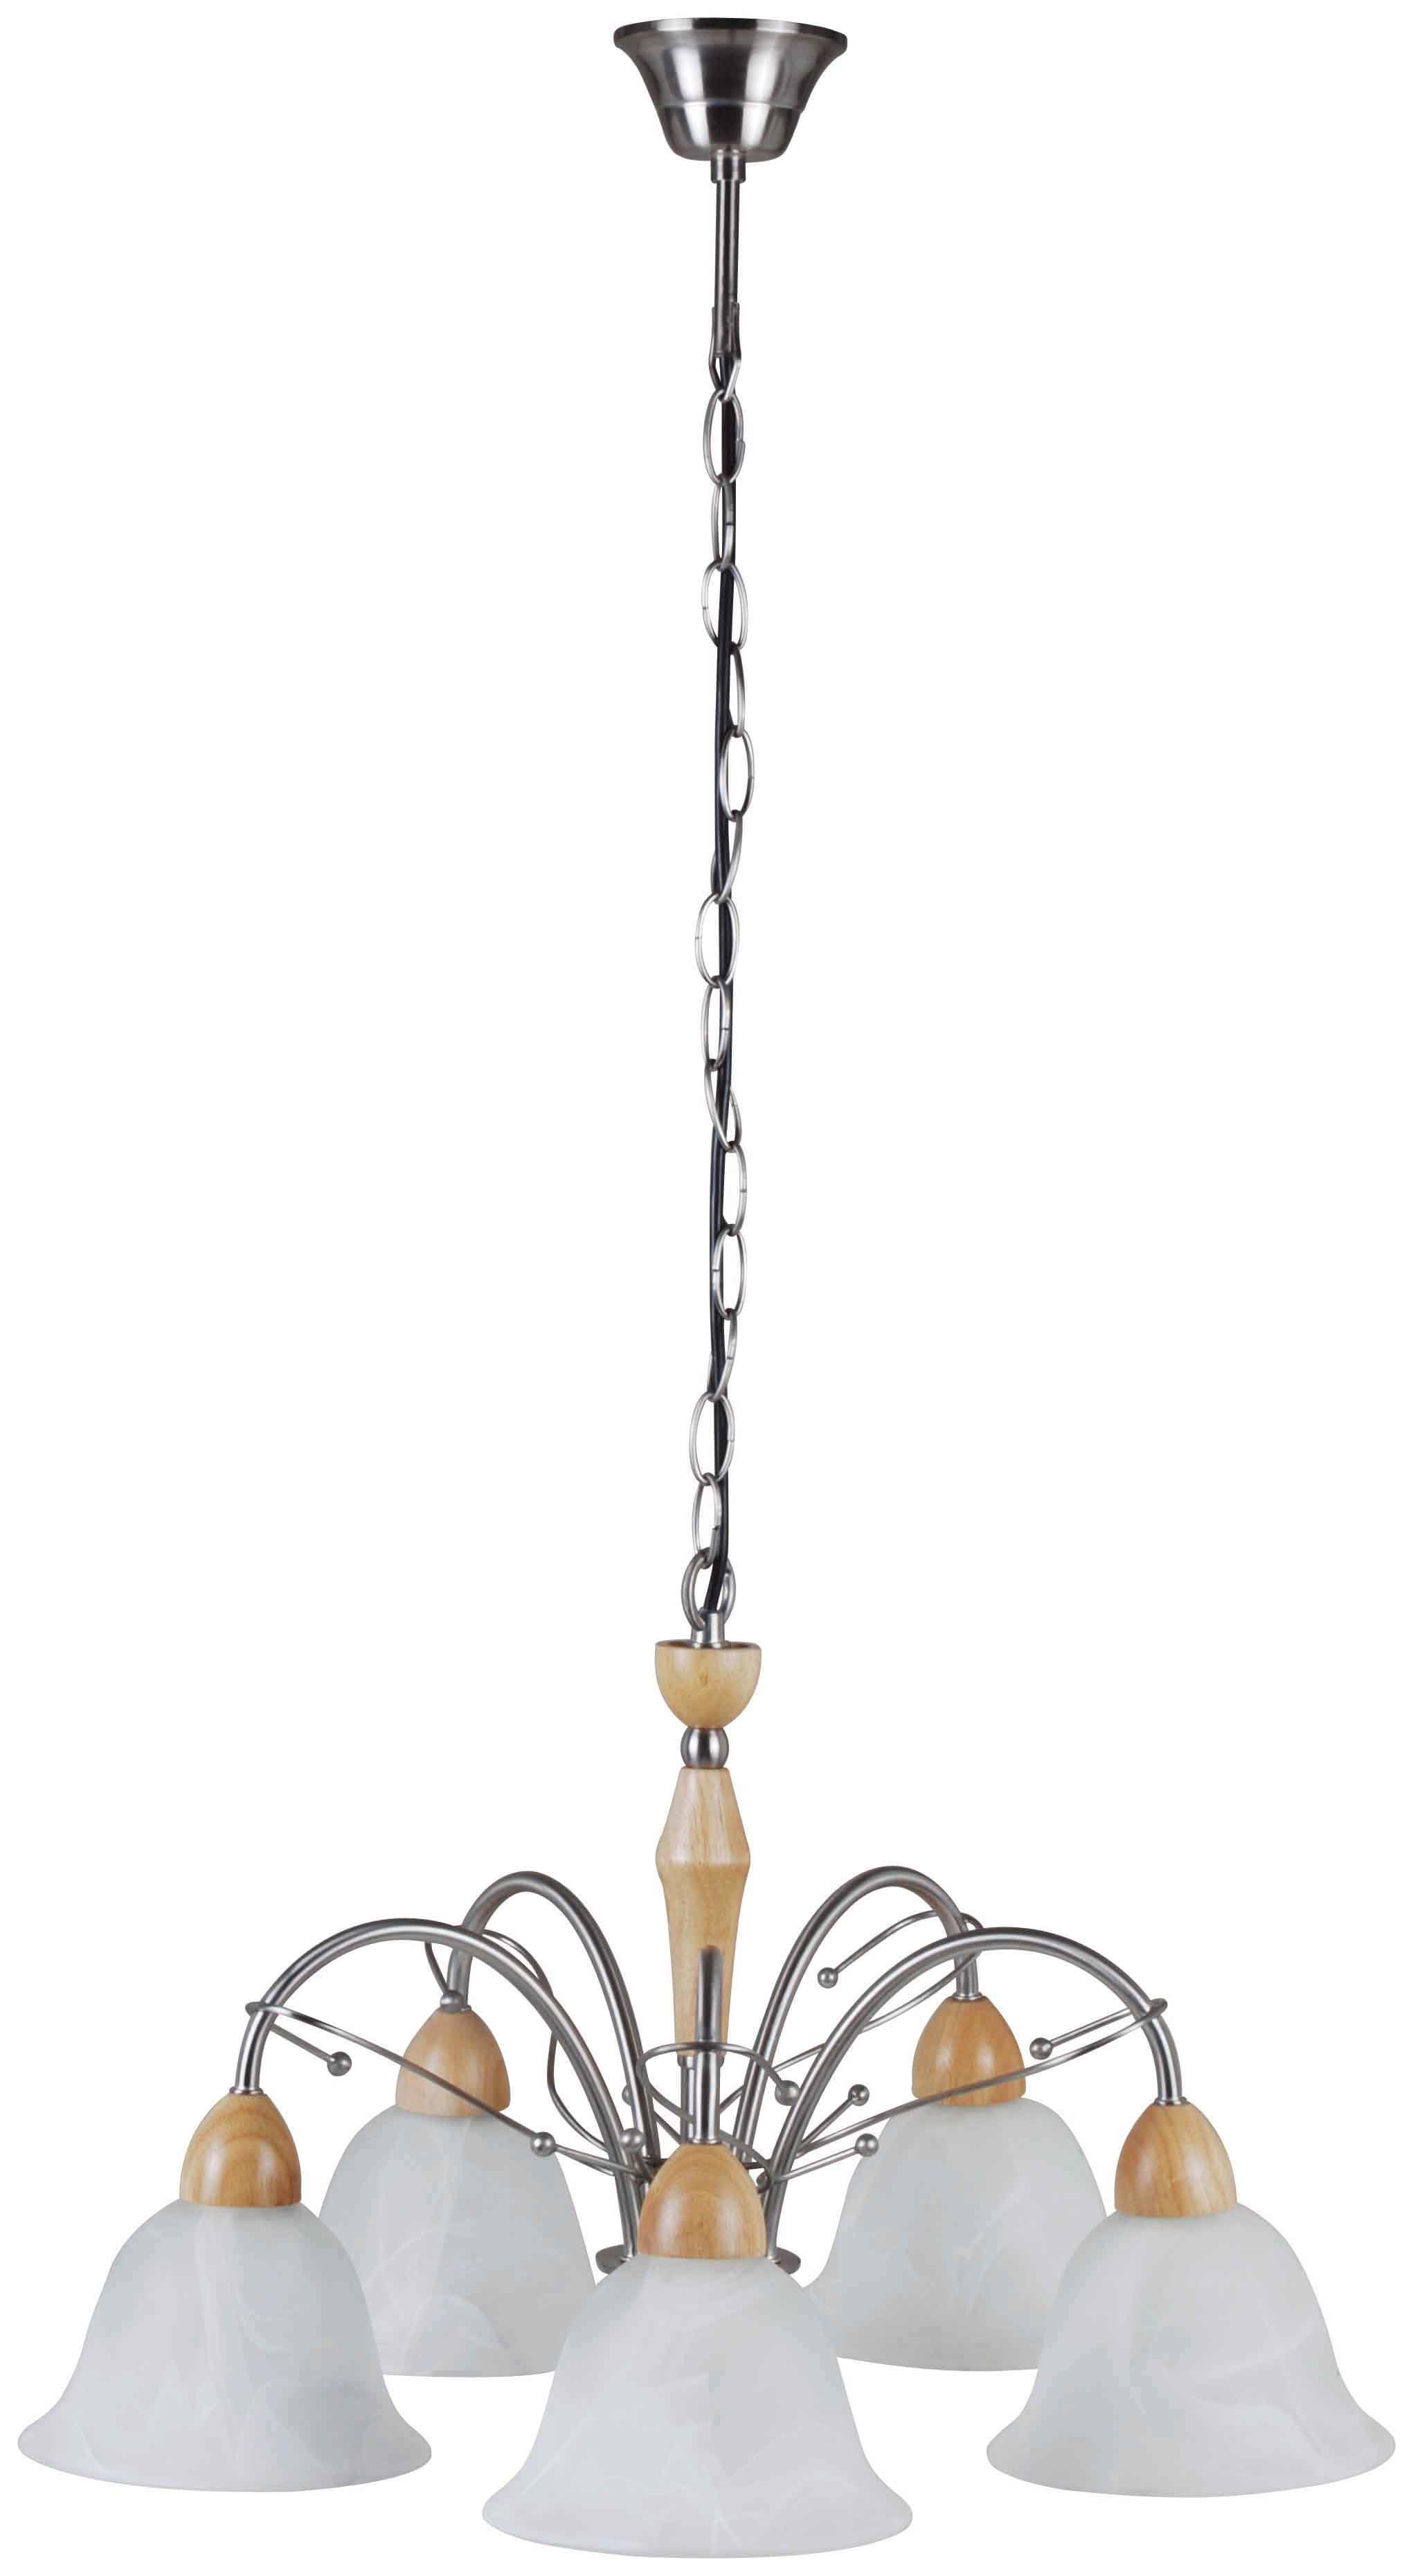 Wood & Iron Pendant Lamps / Chandelier